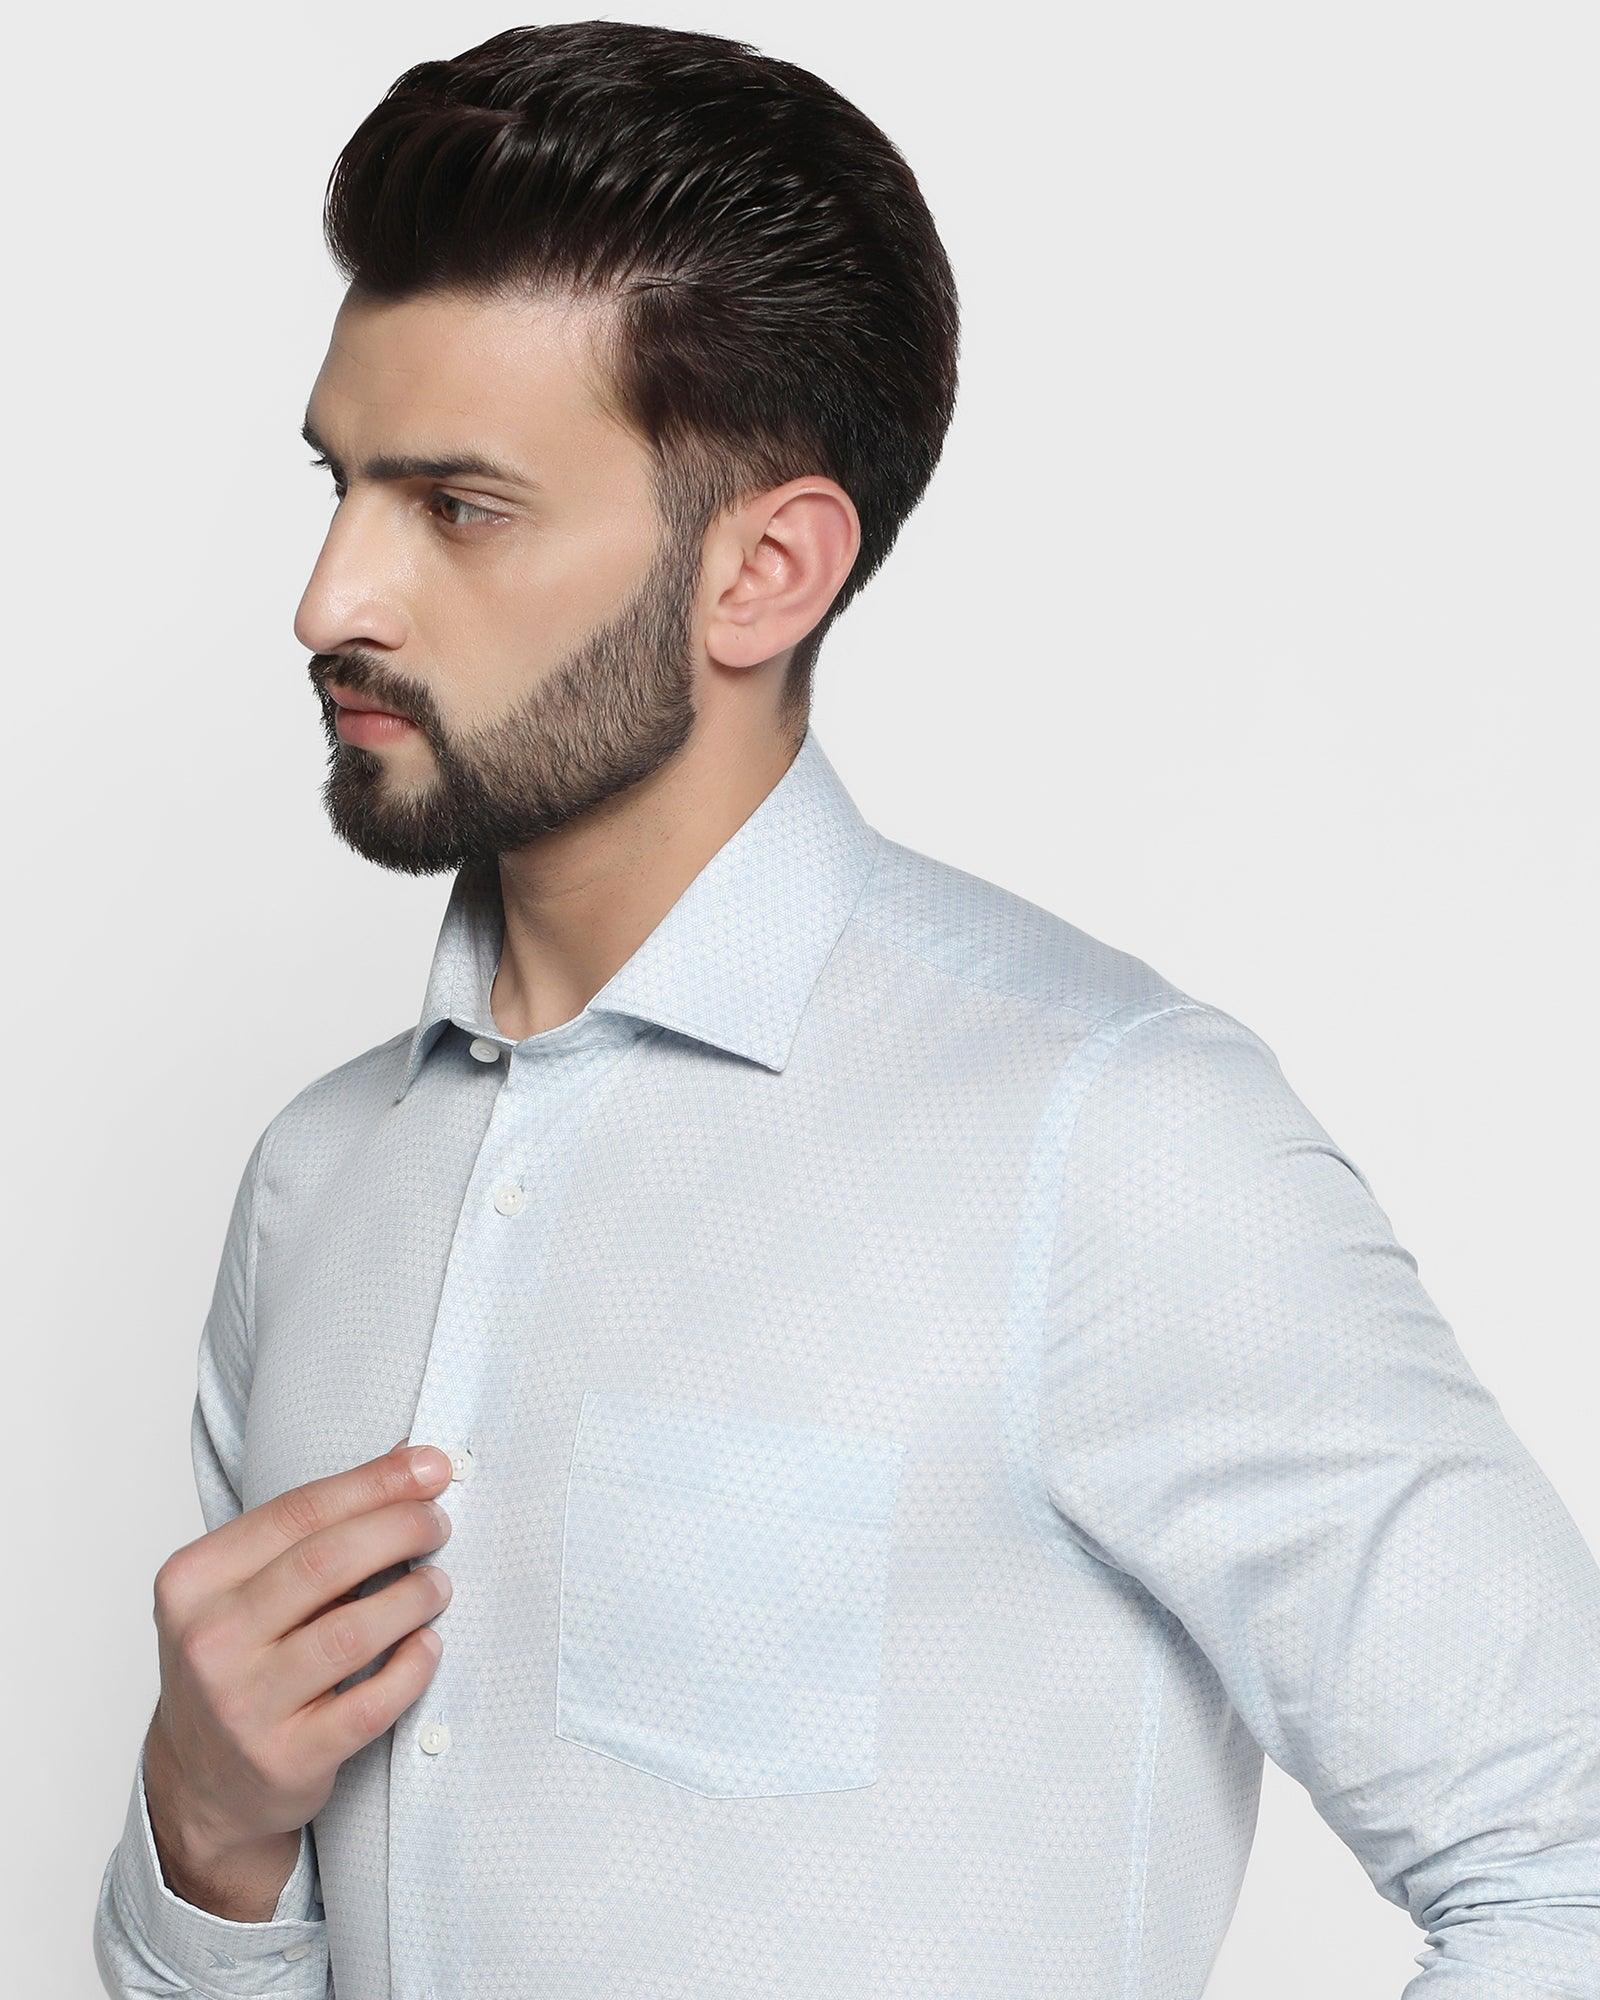 Formal Blue Printed Shirt - Agnas